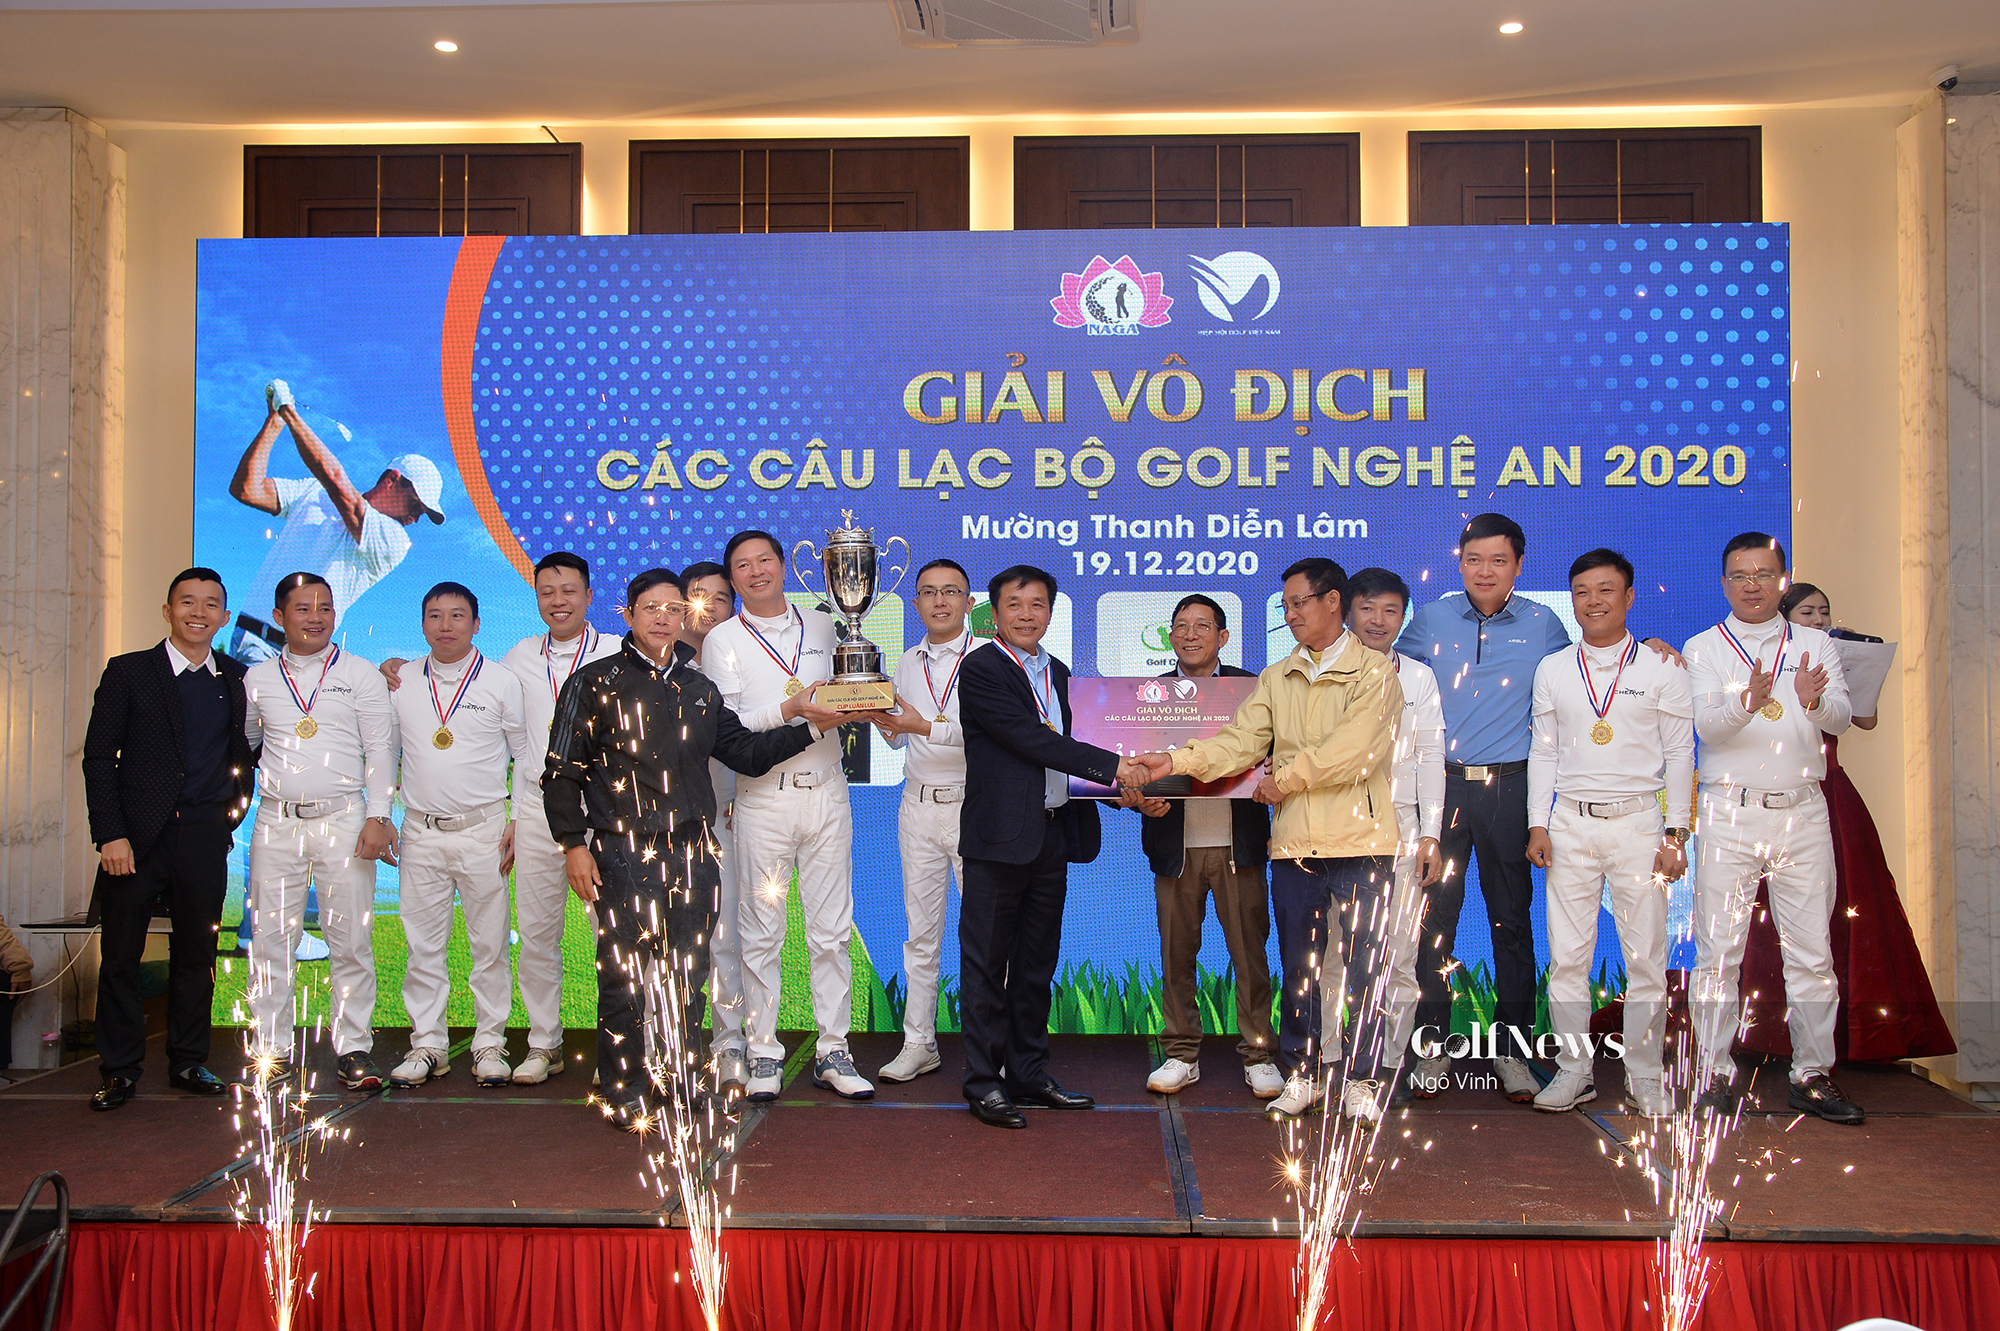 Giải Vô địch các CLB golf Nghệ An 2020: King Club đăng quang ngôi vương sau màn “rượt đuổi” kịch tính